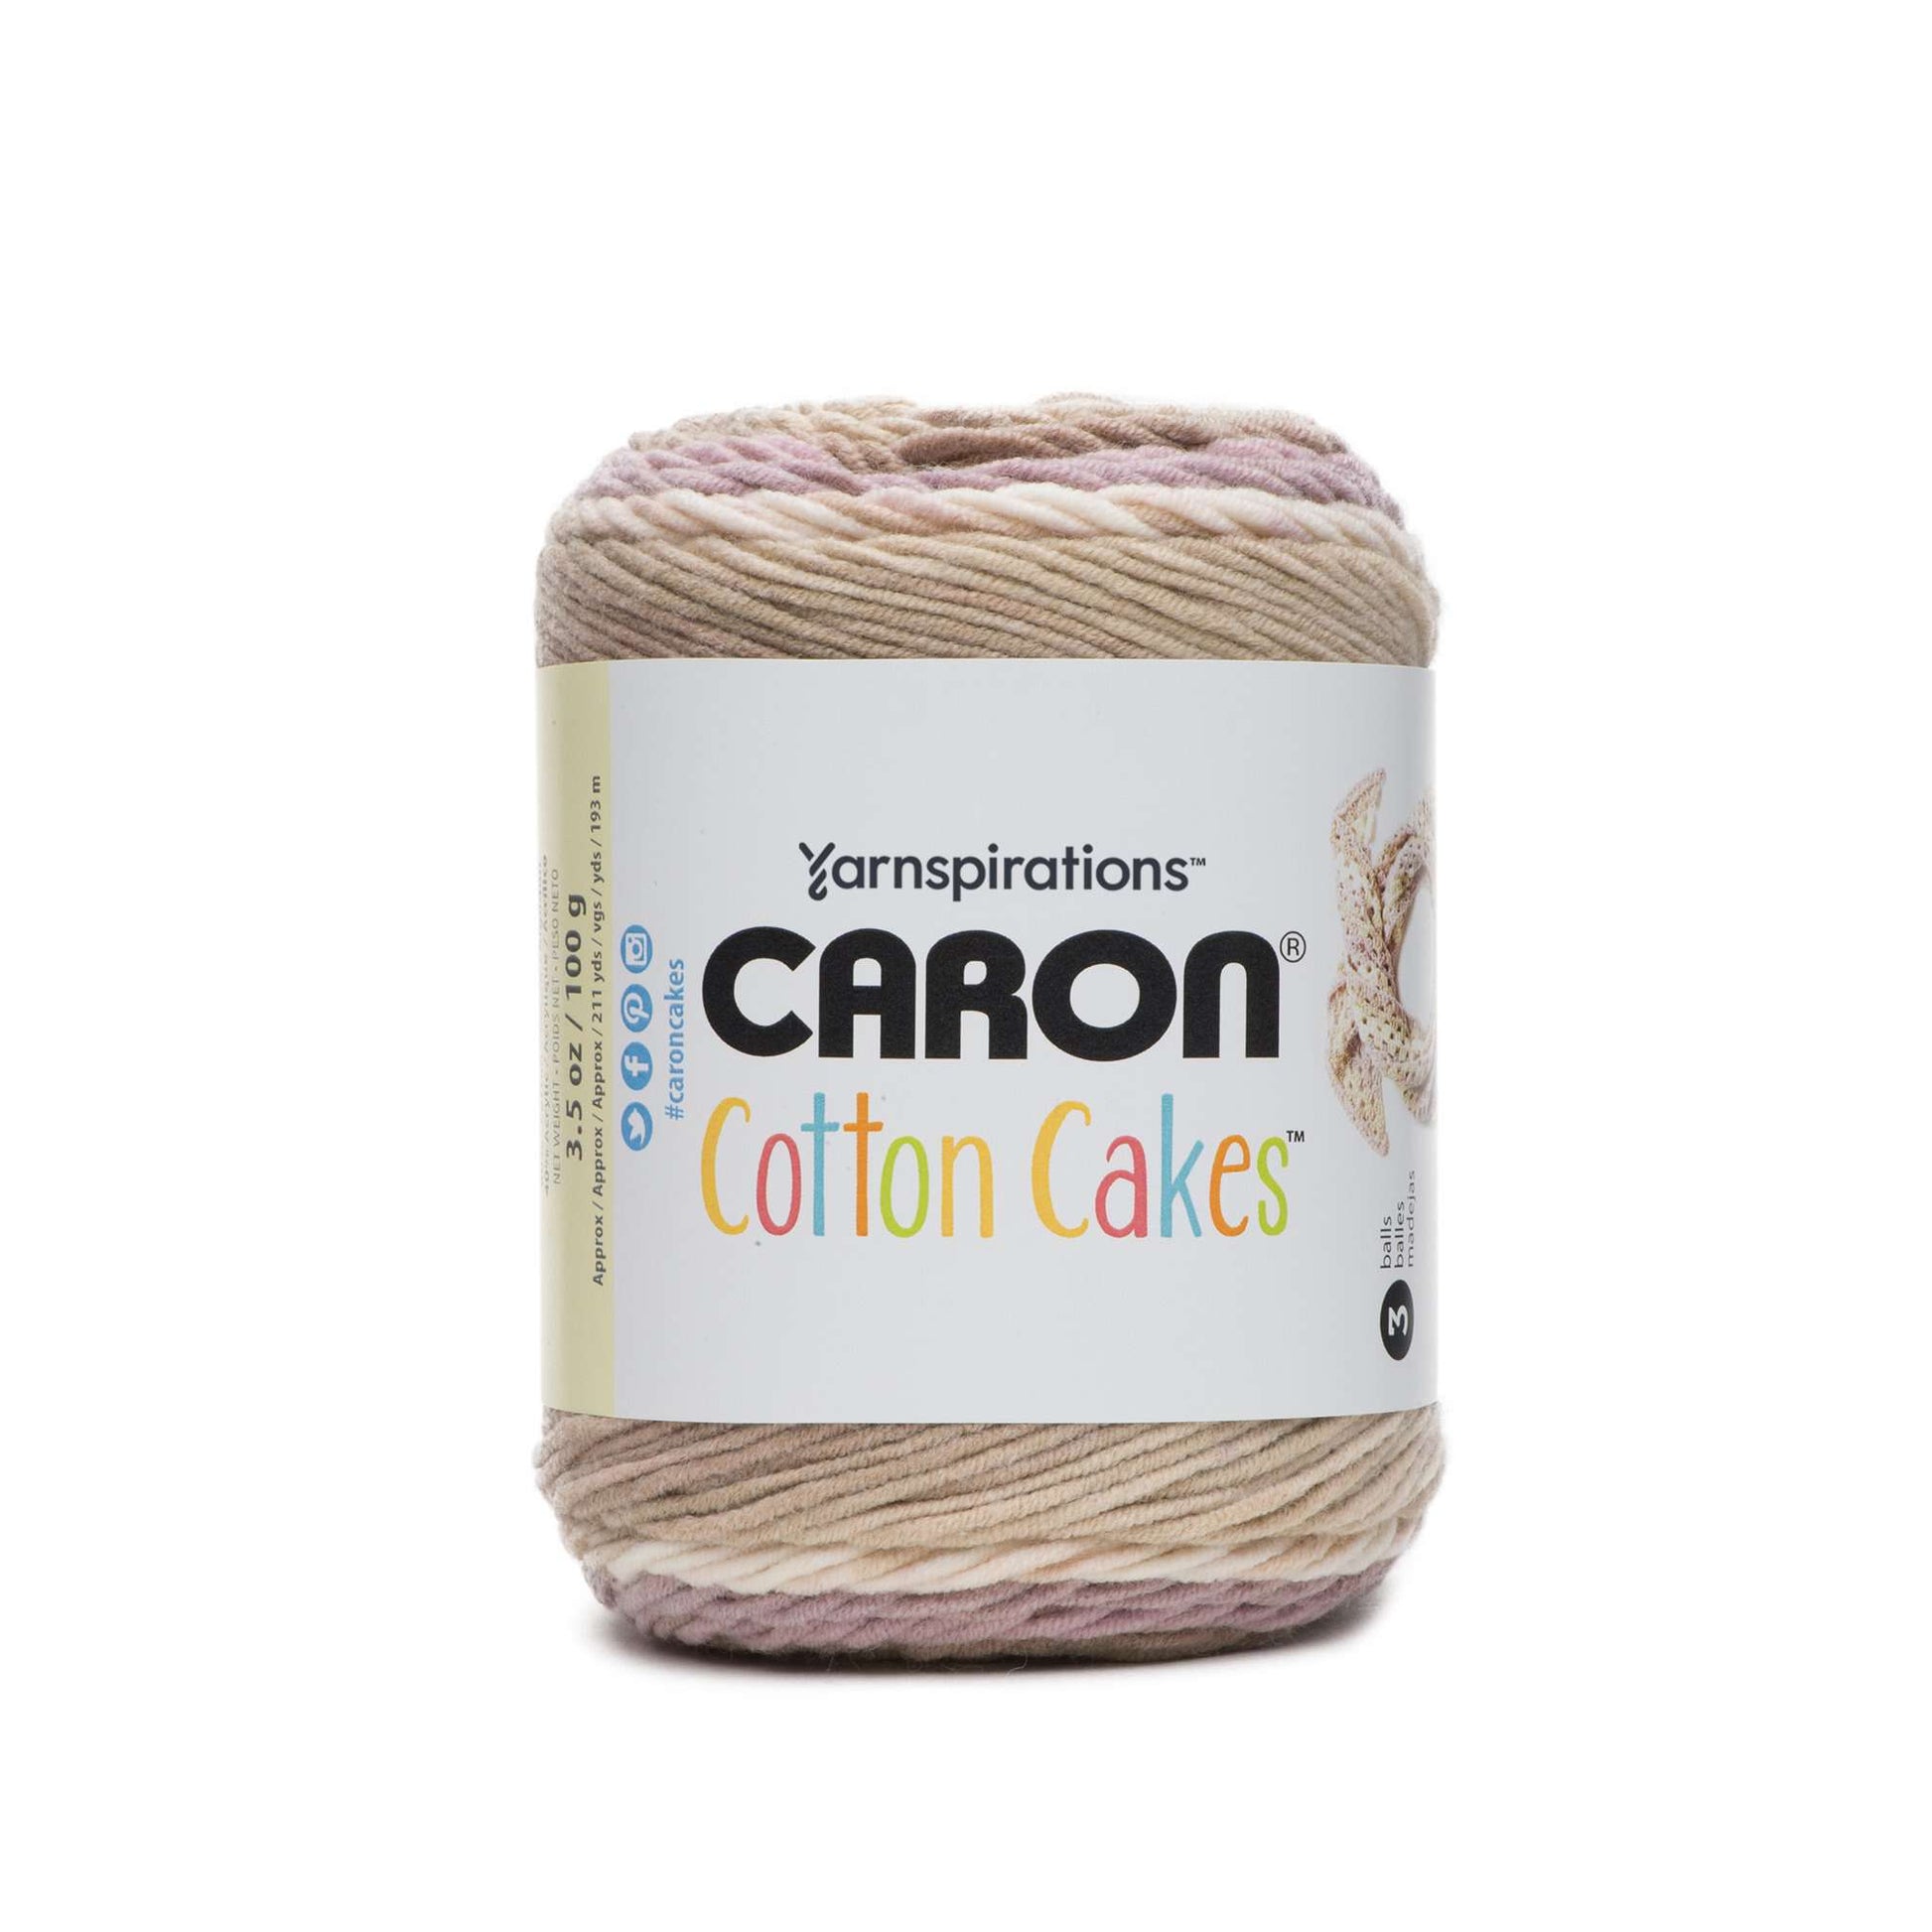 Caron Cotton 3.5oz Cakes Yarn